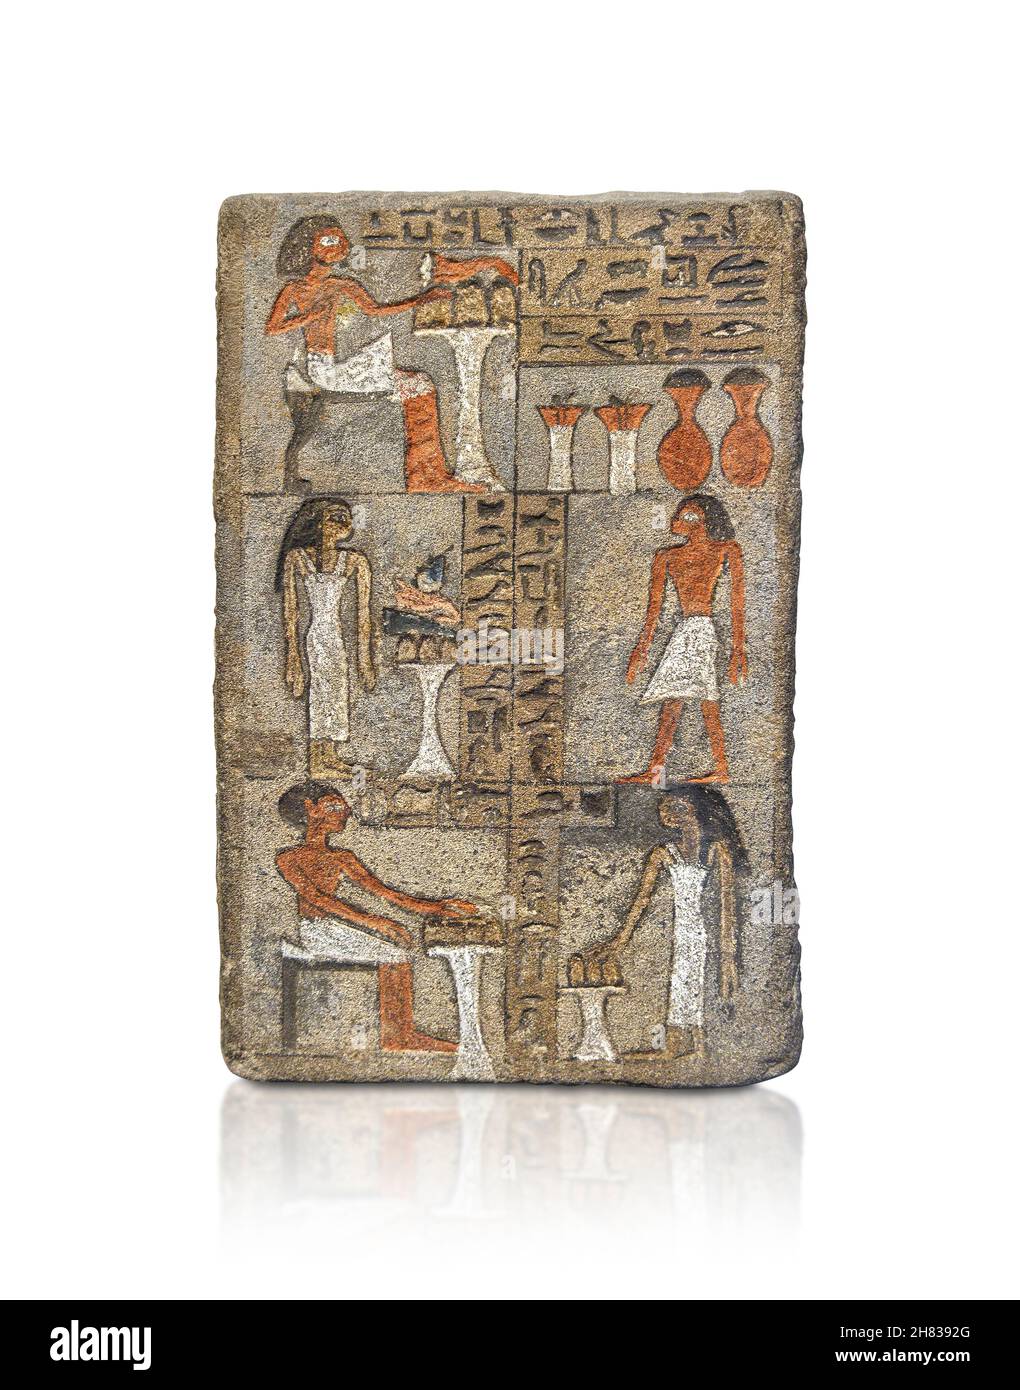 Ancienne stèle égyptienne de Kemes, 1790–1660 av. J.-C., 12-13e dynastie, Abydos.Kunsthistorisches Muesum Vienne AS 112.En haut à gauche, l'archiviste Kemes est illustré Banque D'Images